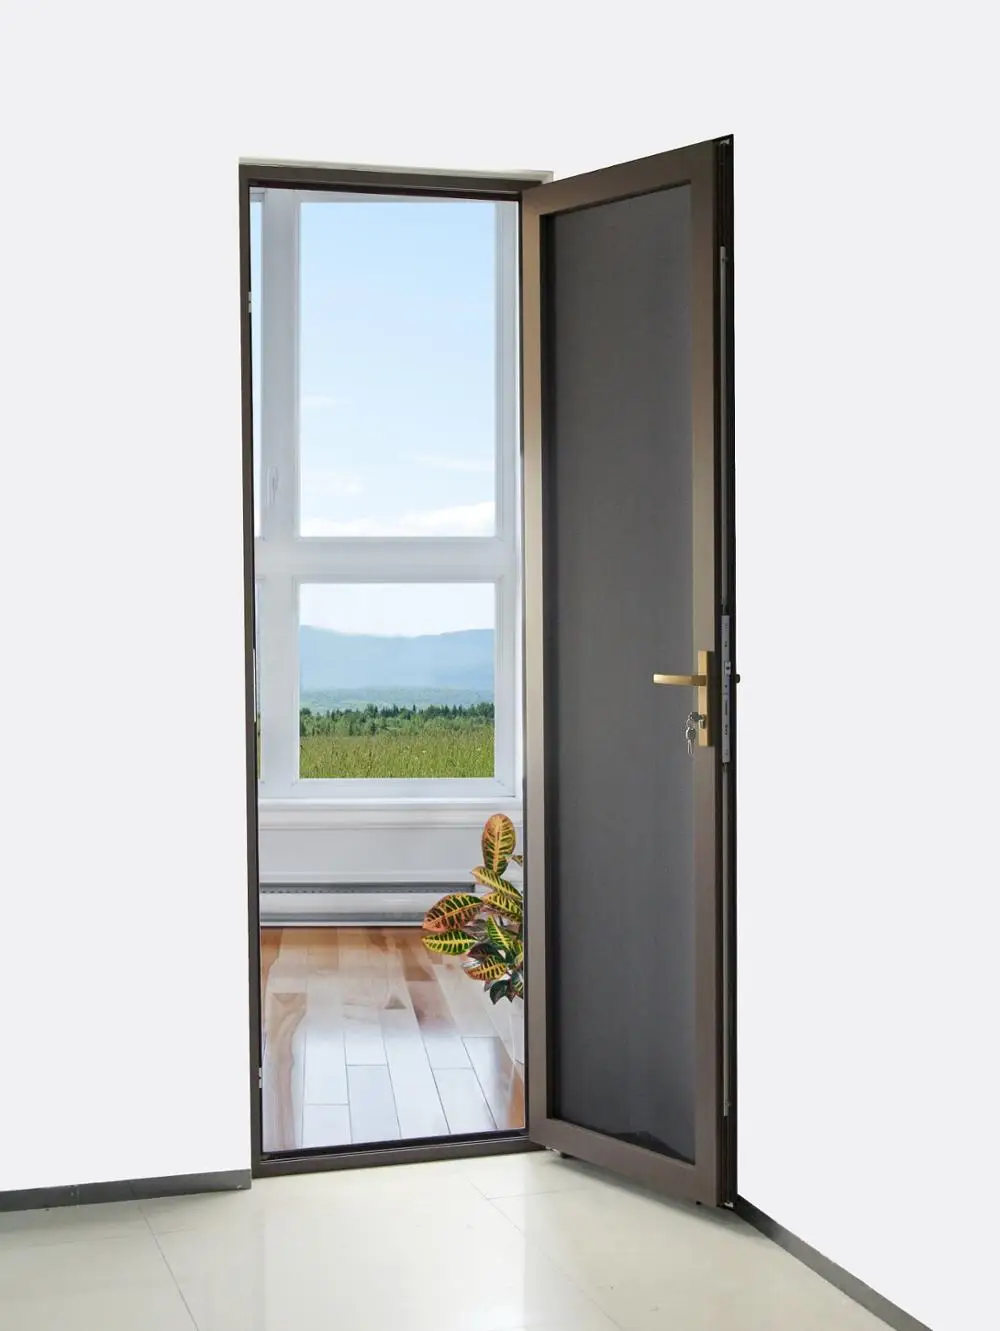 Crimsafe security screen doors for exterior doors